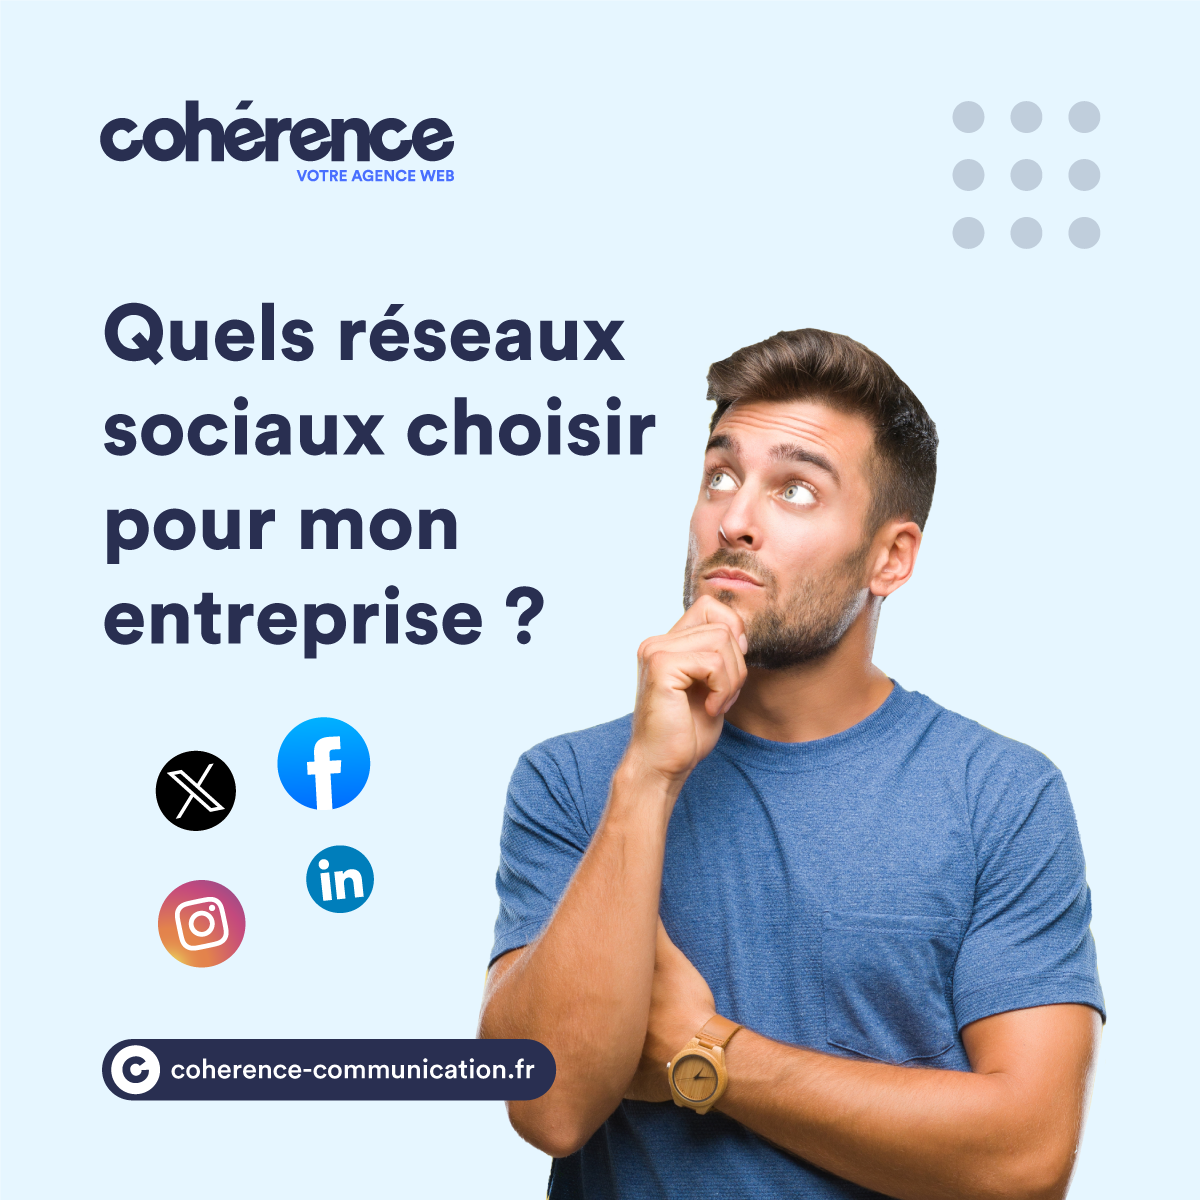 Coherence Agence Web A Rennes Quels Reseaux Sociaux Choisir Pour Mon Entreprise